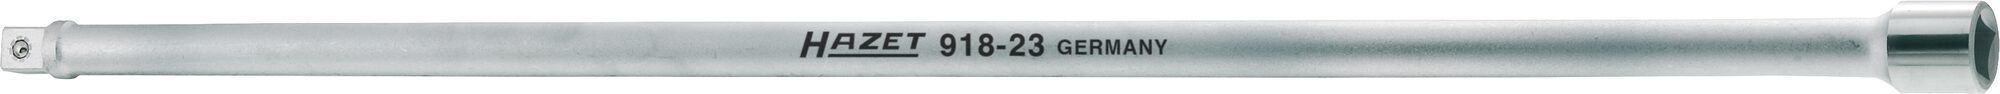 HAZET Verlängerung 918-23 · Vierkant hohl 12,5 mm (1/2 Zoll) · Vierkant massiv 12,5 mm (1/2 Zoll)